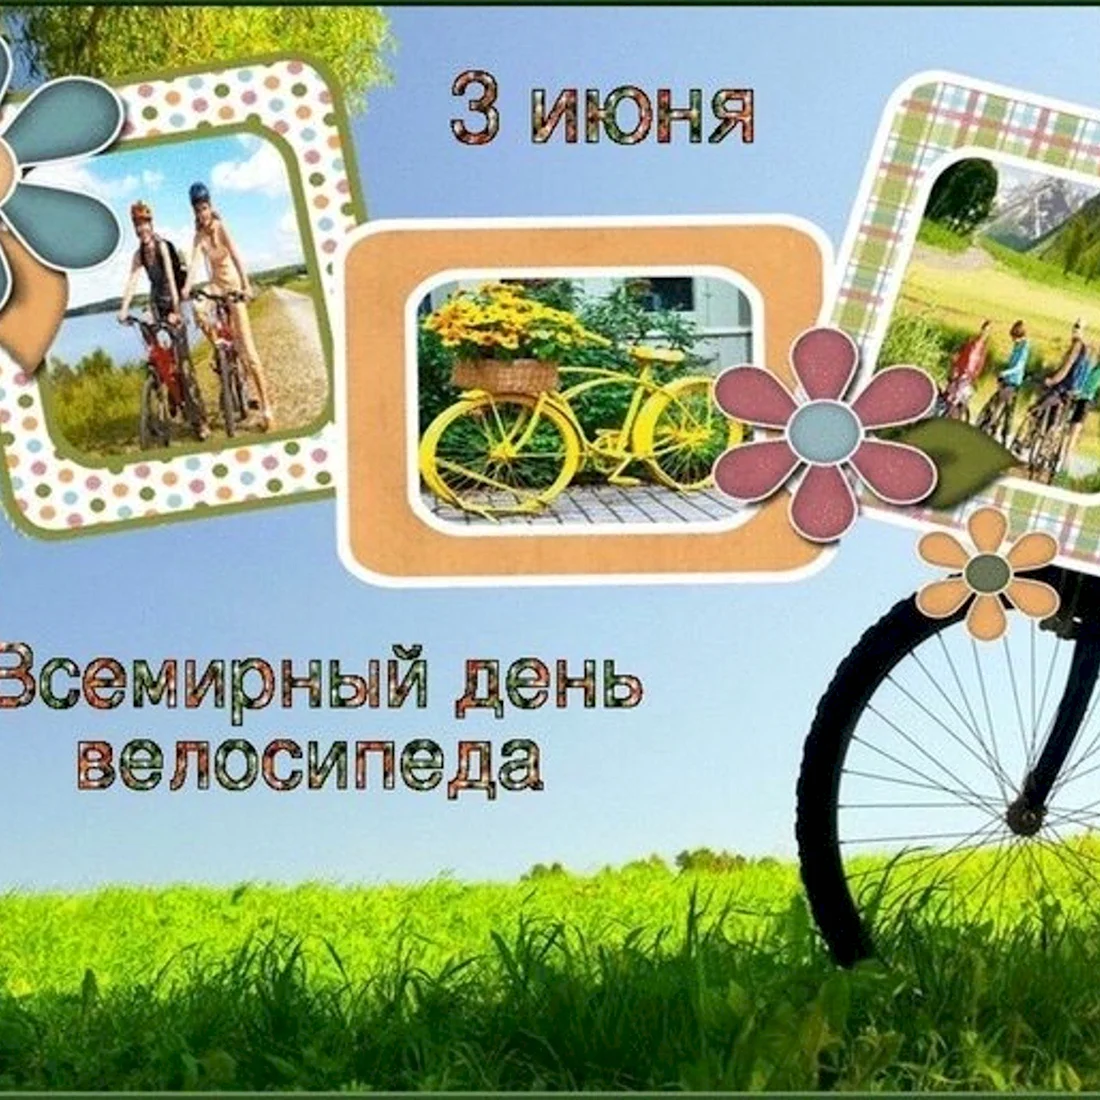 Международный день велосипеда 3 июня. Поздравление на праздник